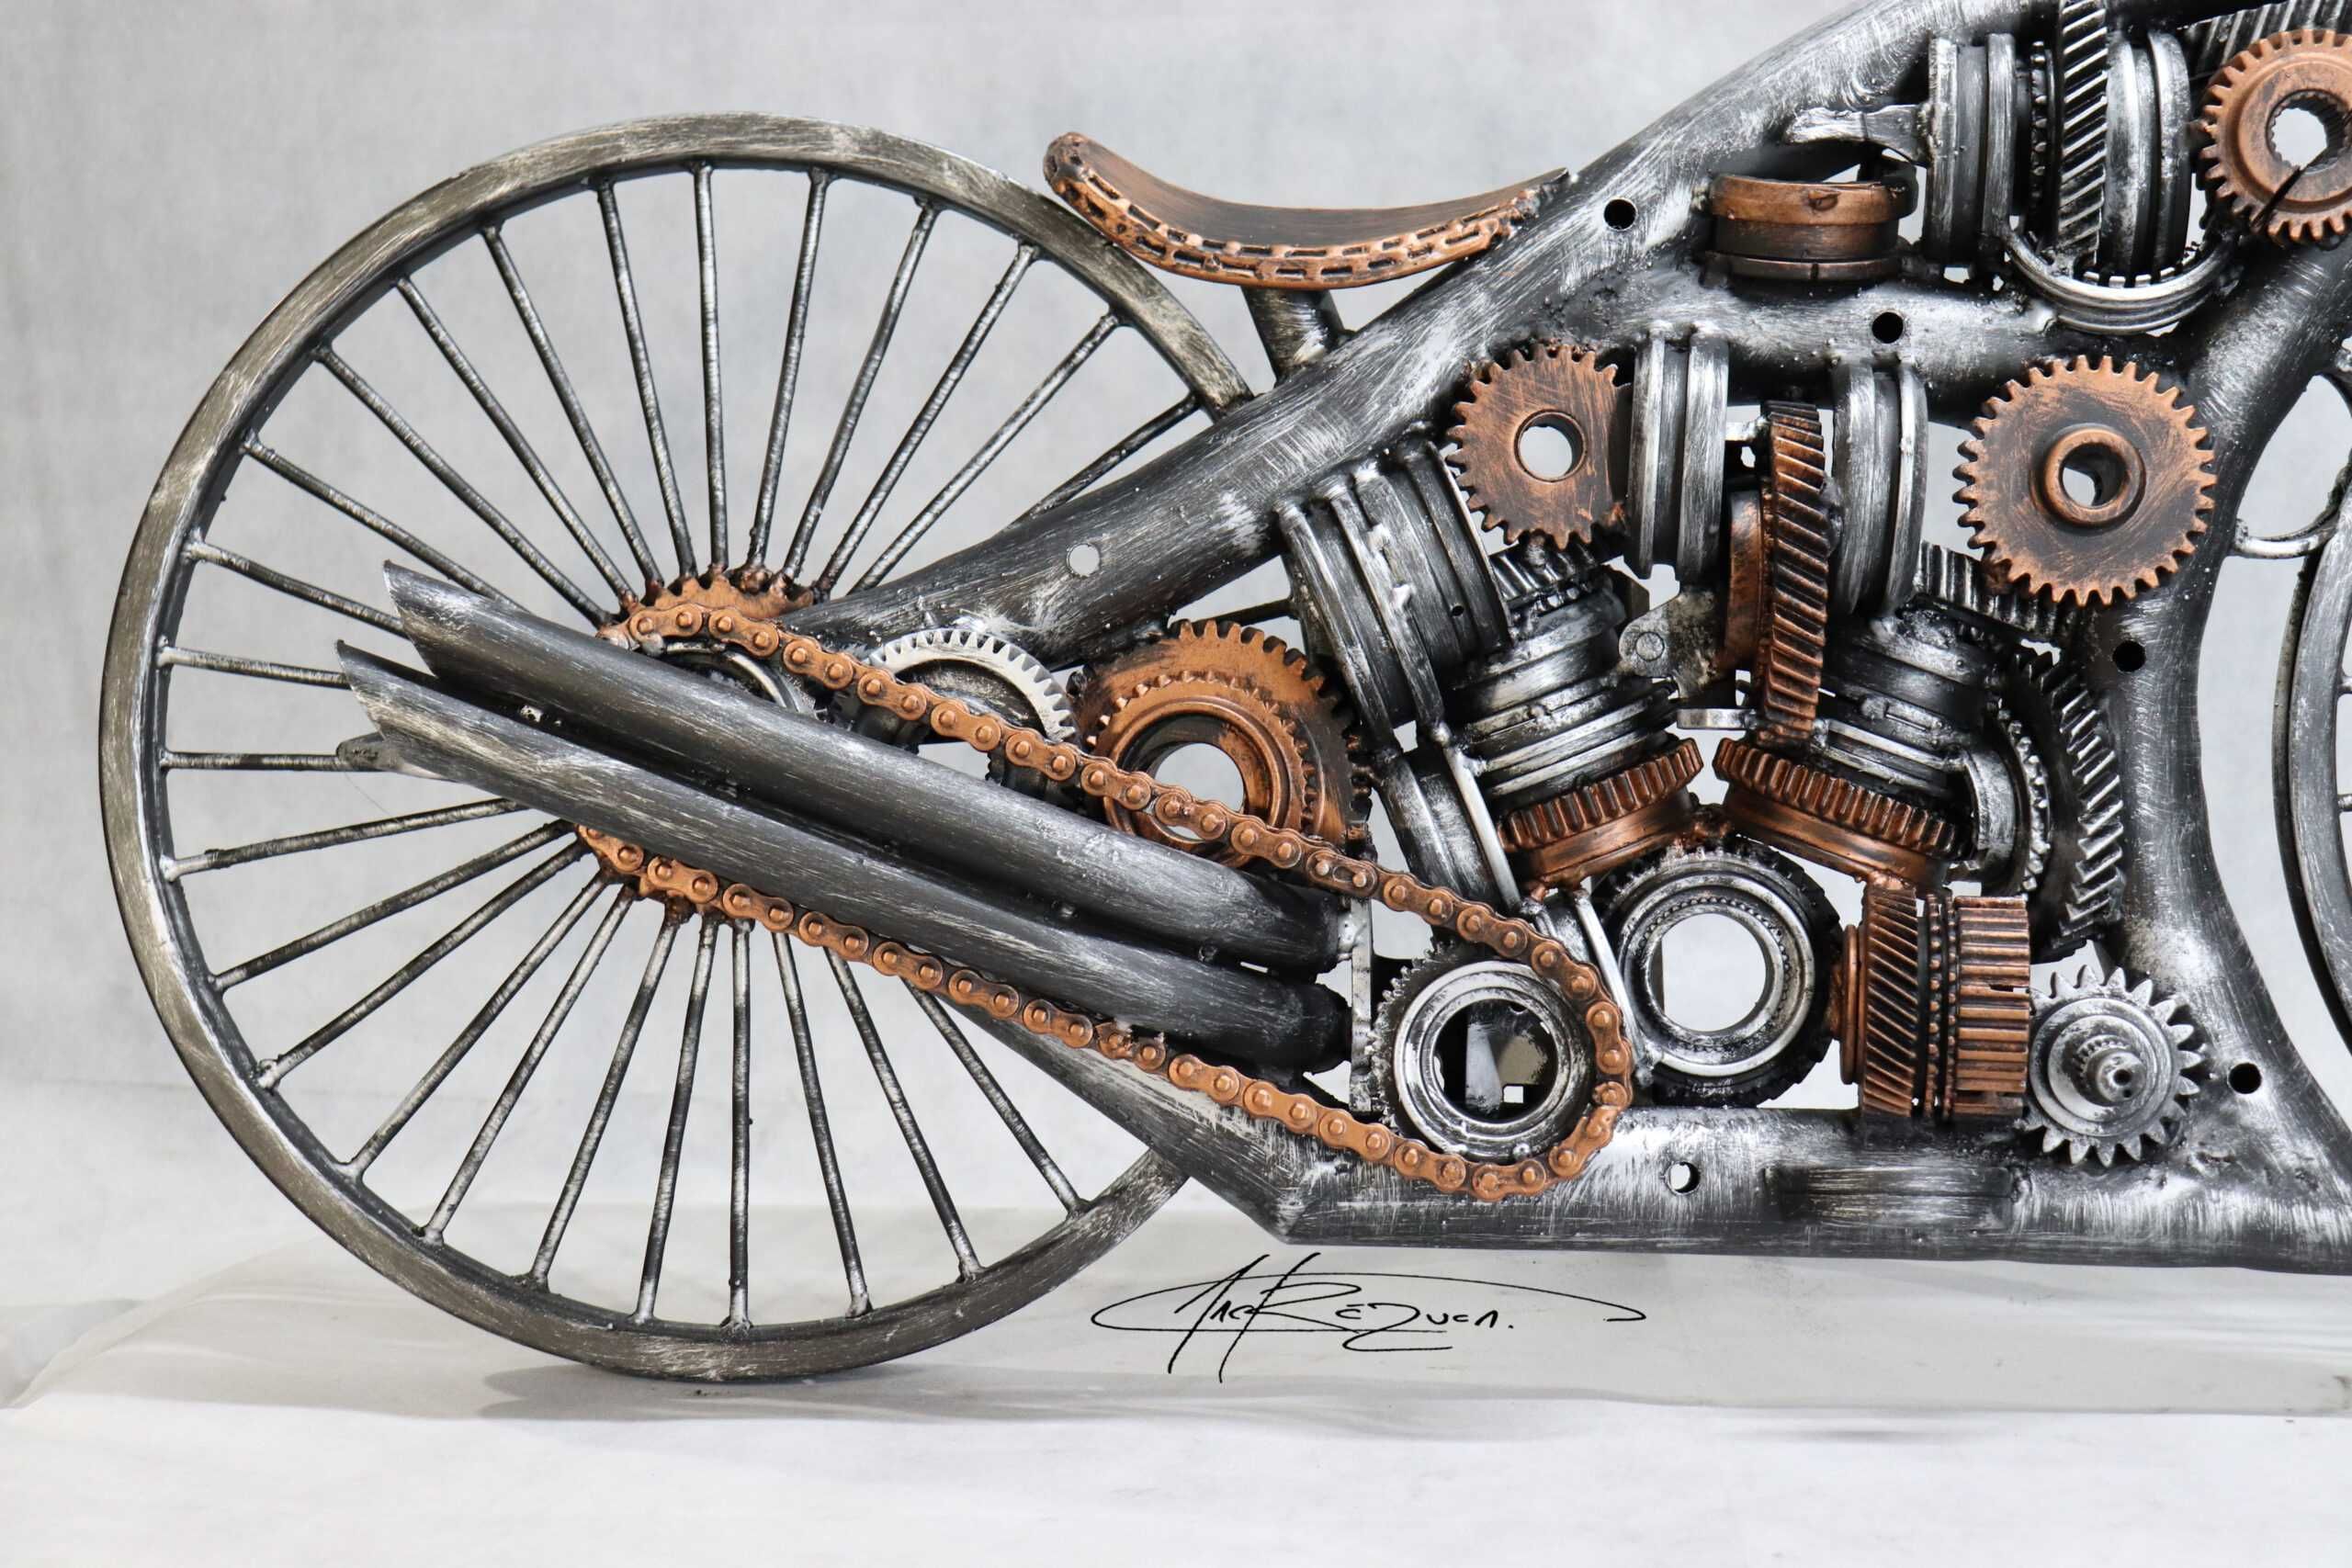 Motocicleta - Sculptura piese auti din otel -1,2m lungime